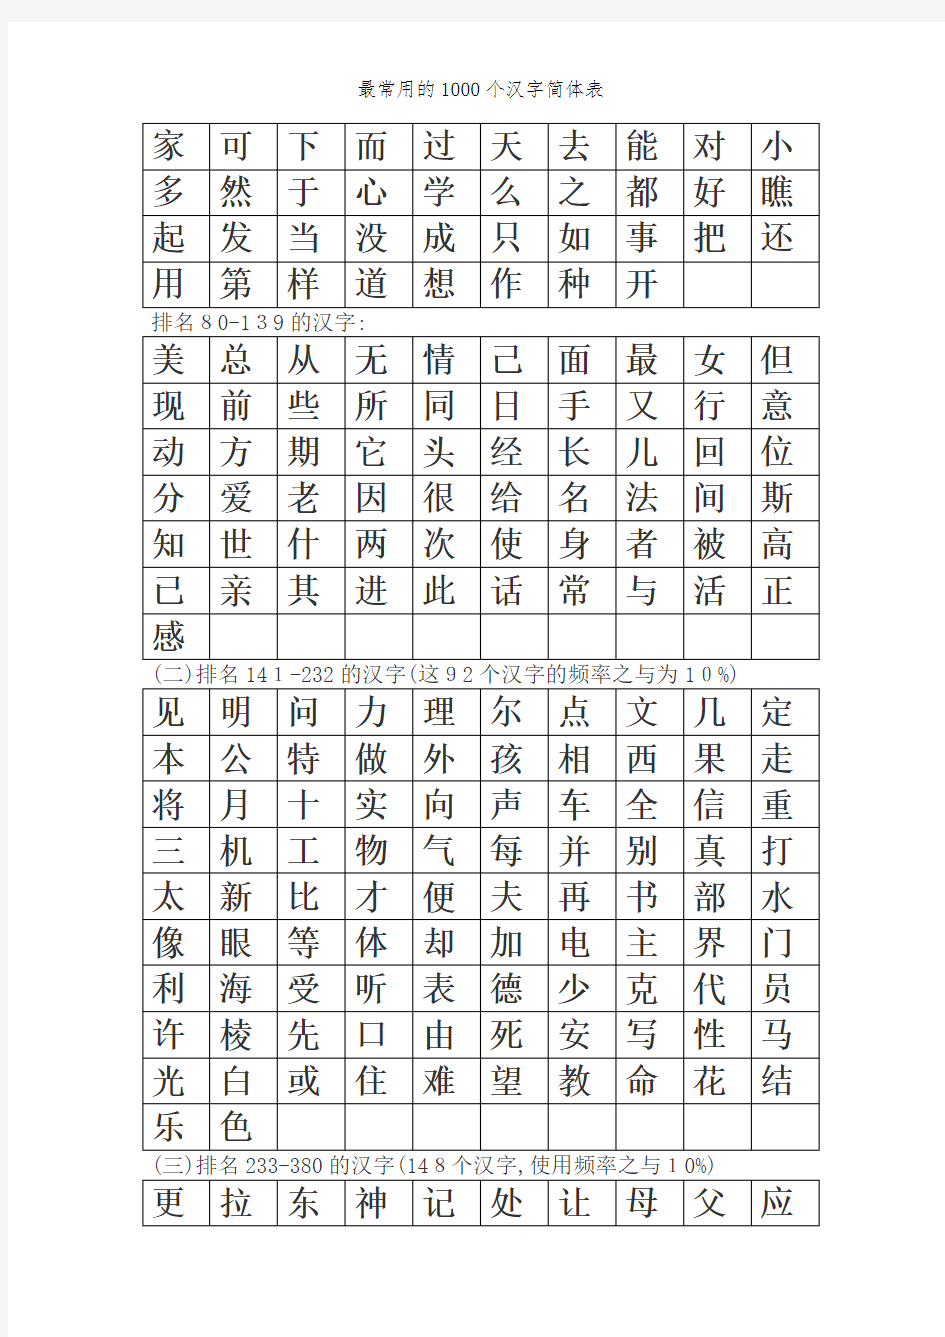 最常用的1000个汉字简体表